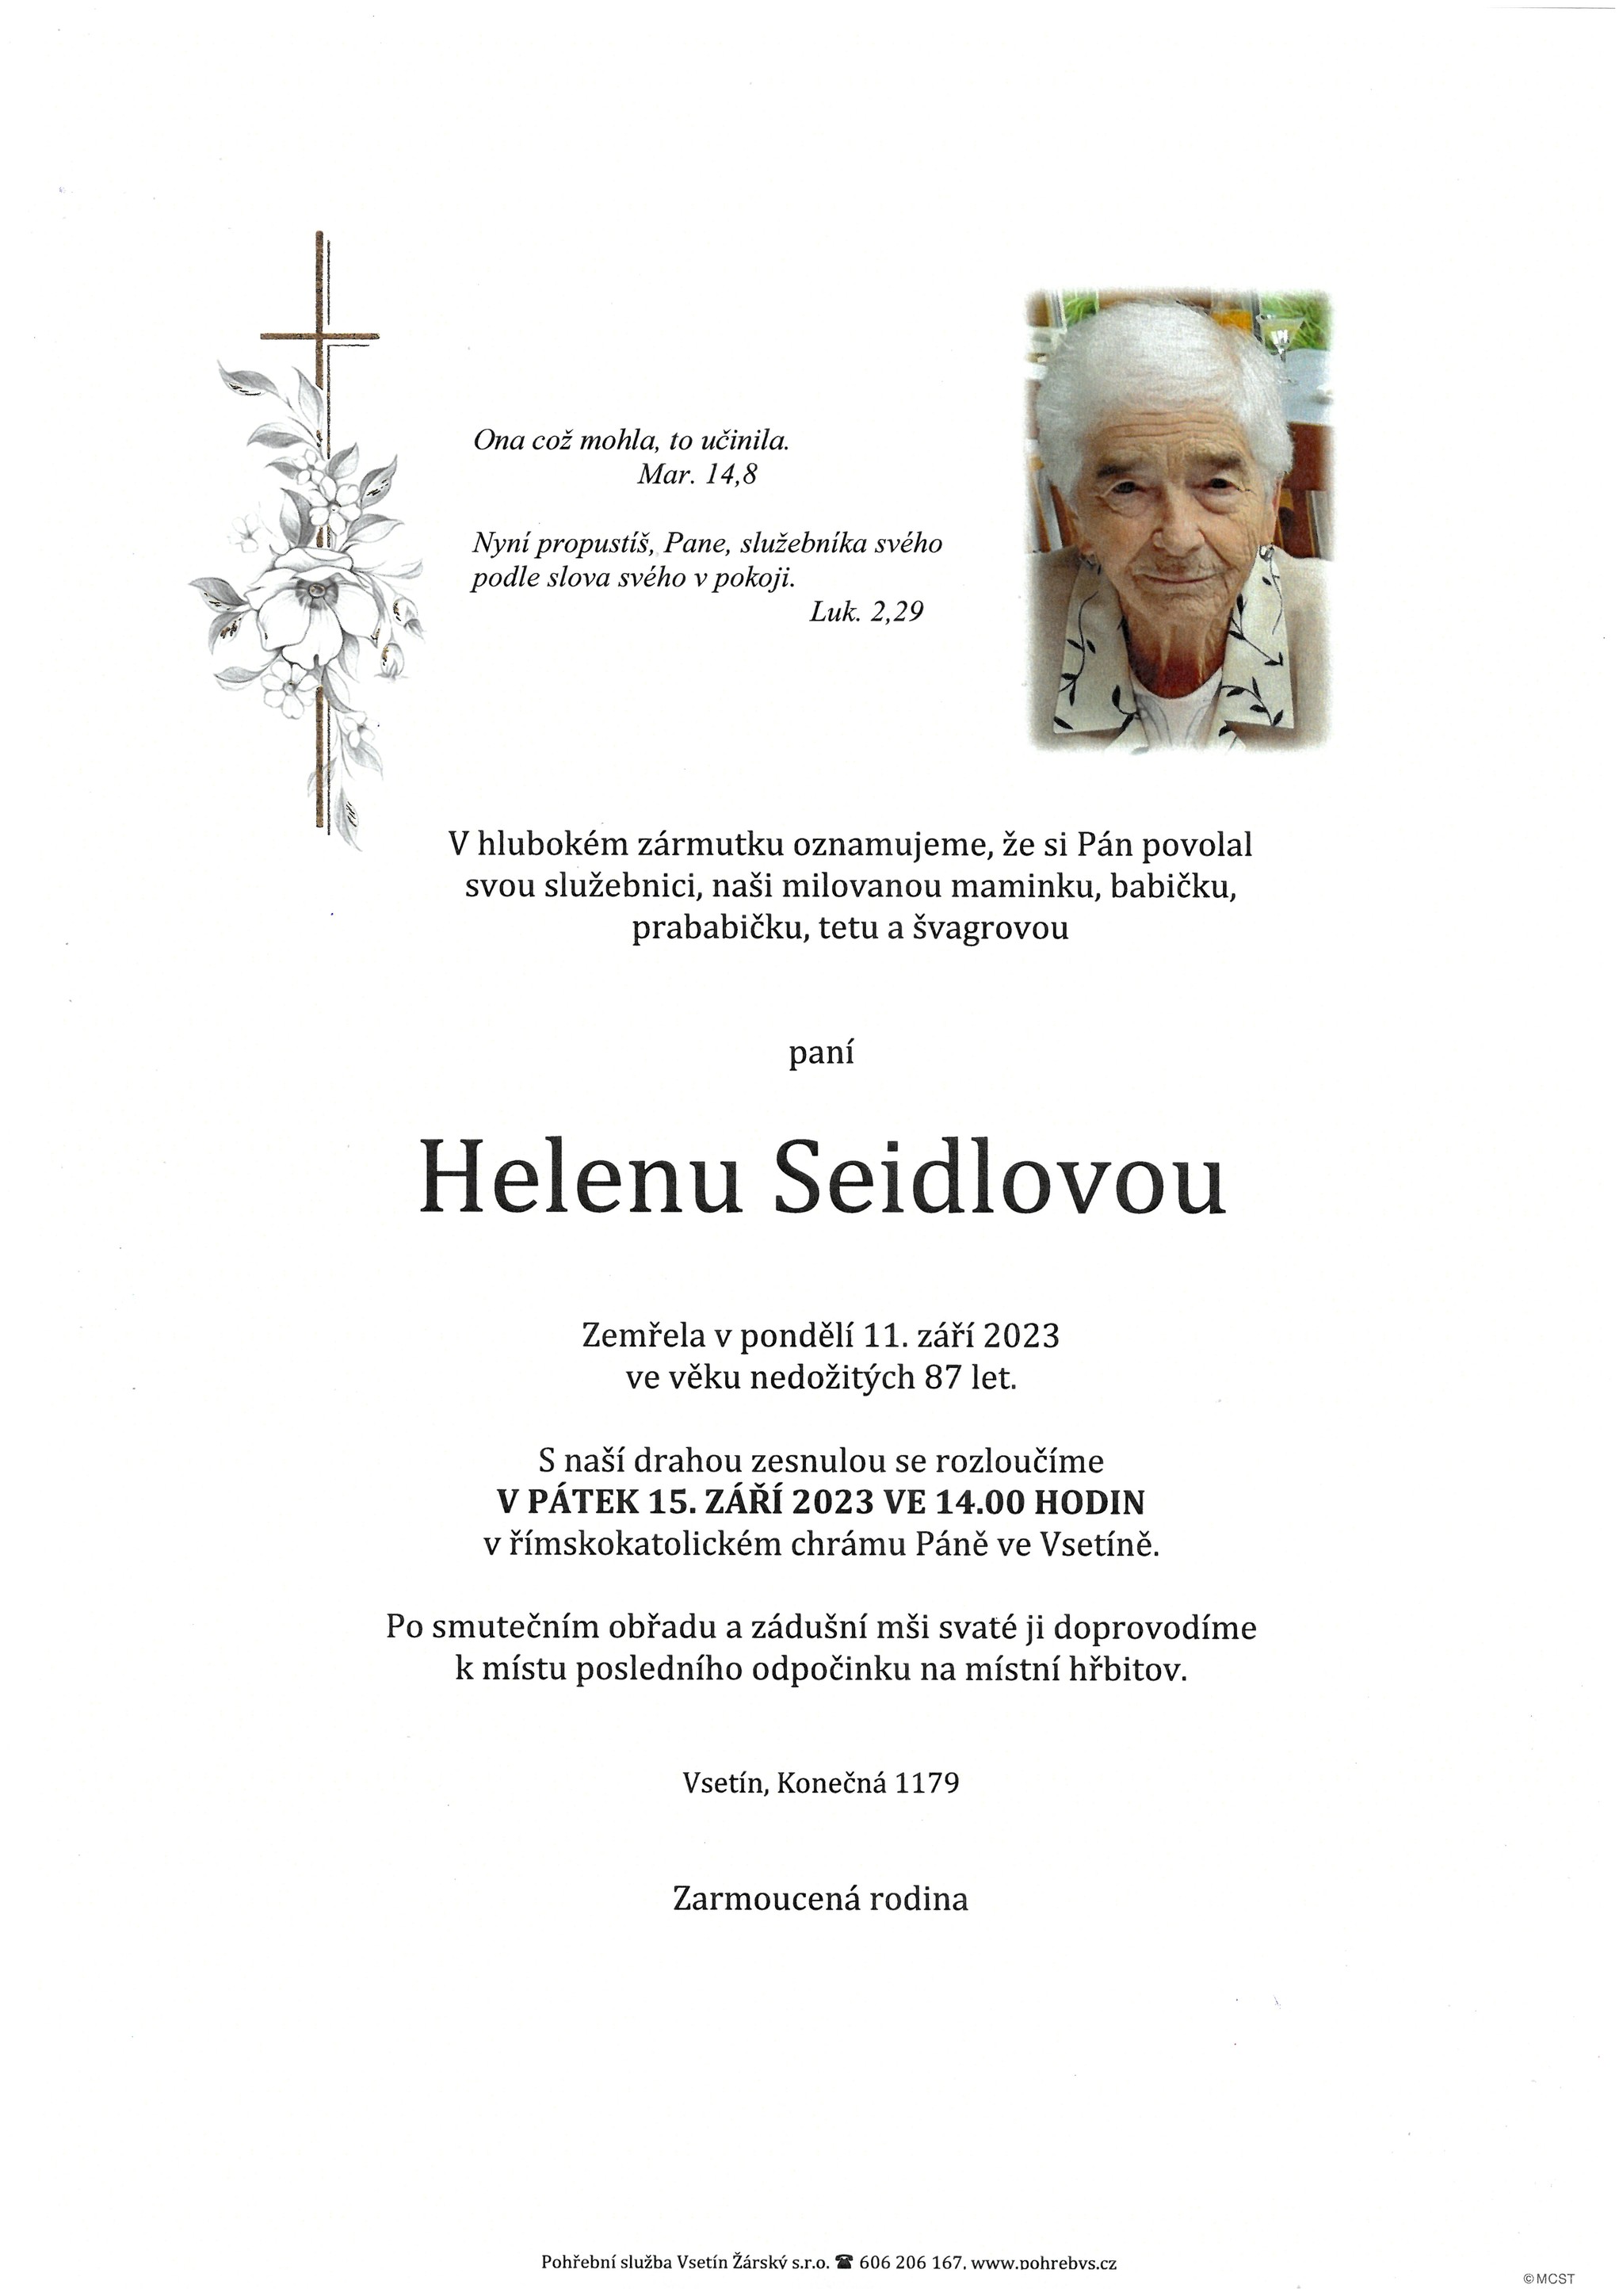 Helena Seidlová